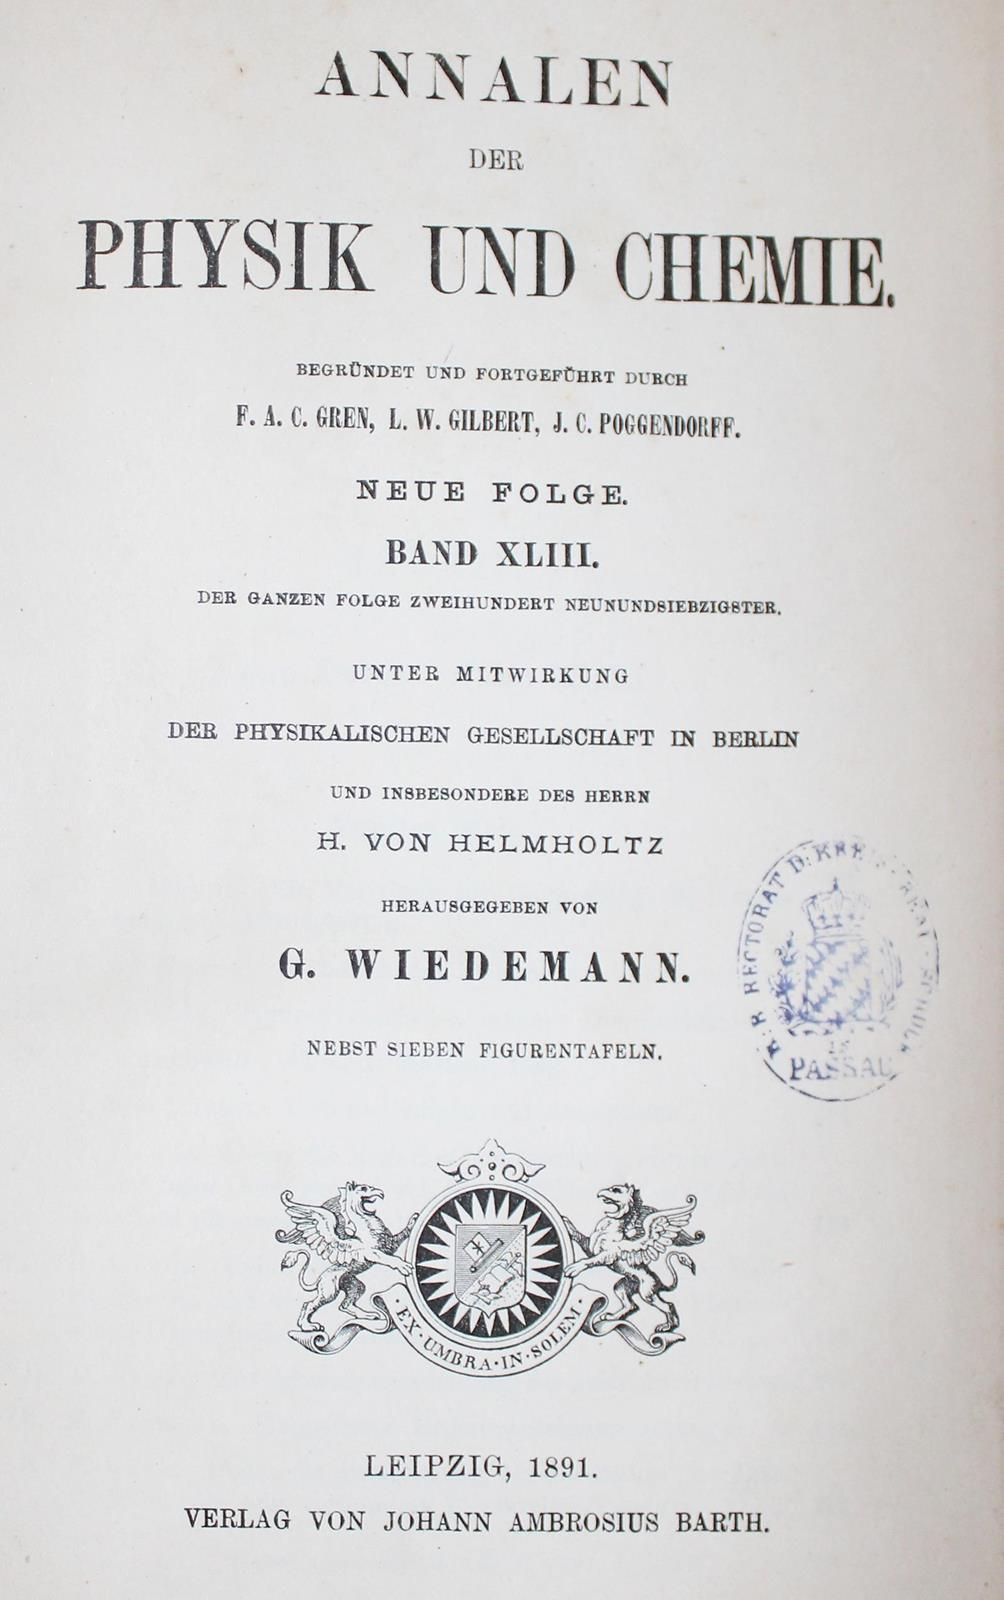 Annalen der Physik. 45 Bde. Der Reihe. Lpz., Barth 1877ff. Mit zahlr. Abb. Versc&hellip;